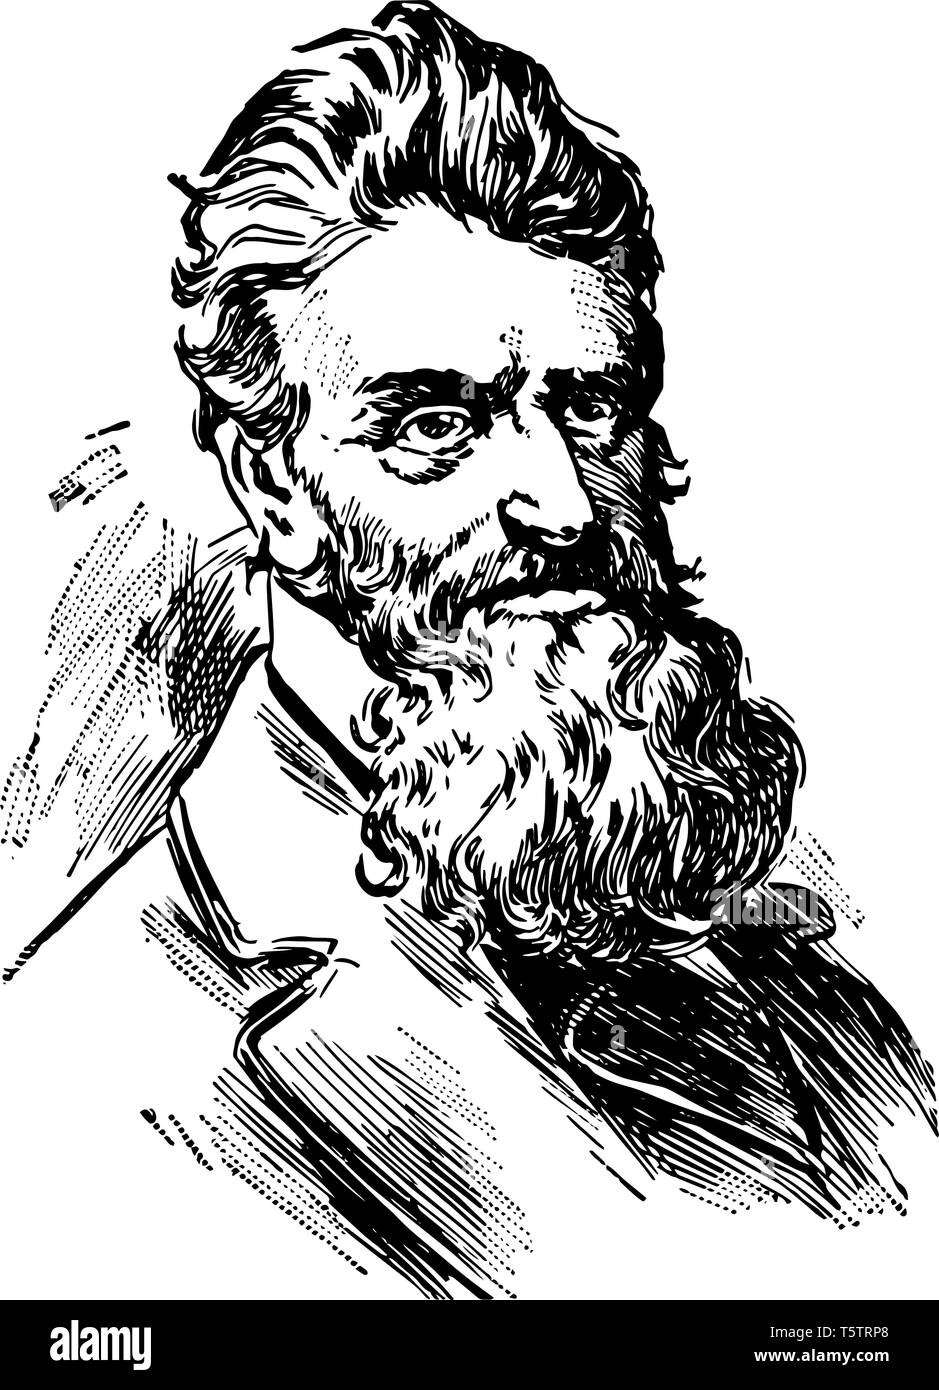 John Brown de 1800 à 1859, il était un abolitionniste américain il a mené un raid sur le manège militaire fédéral de Harpers Ferry pour lancer un mouvement de libération en 1858 v Illustration de Vecteur